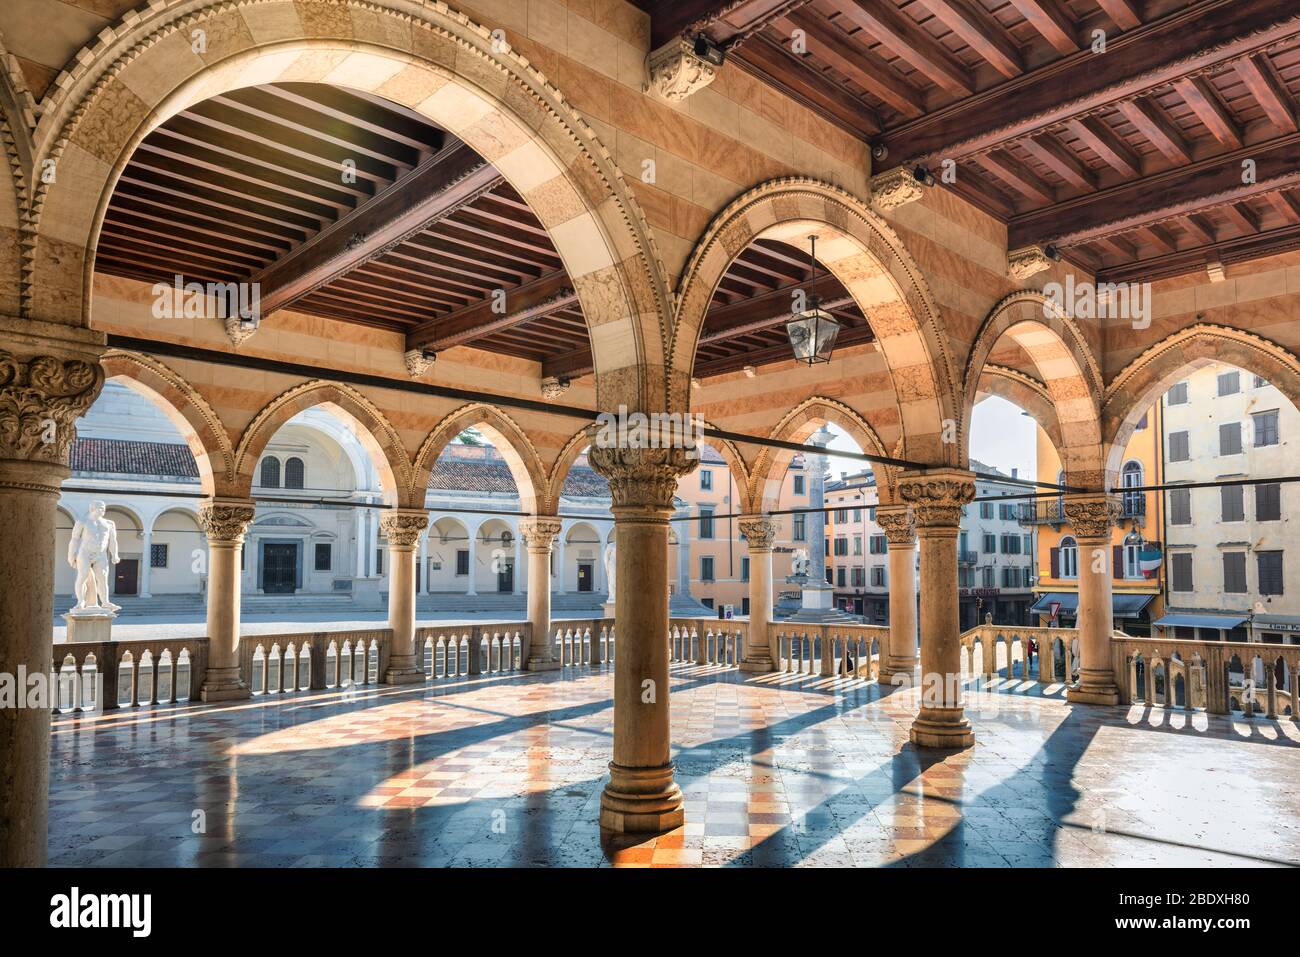 Italian architecture. View of 'Loggia del Lionello' with colonnade in background. Udine, Friuli Venezia Giulia, Italy. Stock Photo